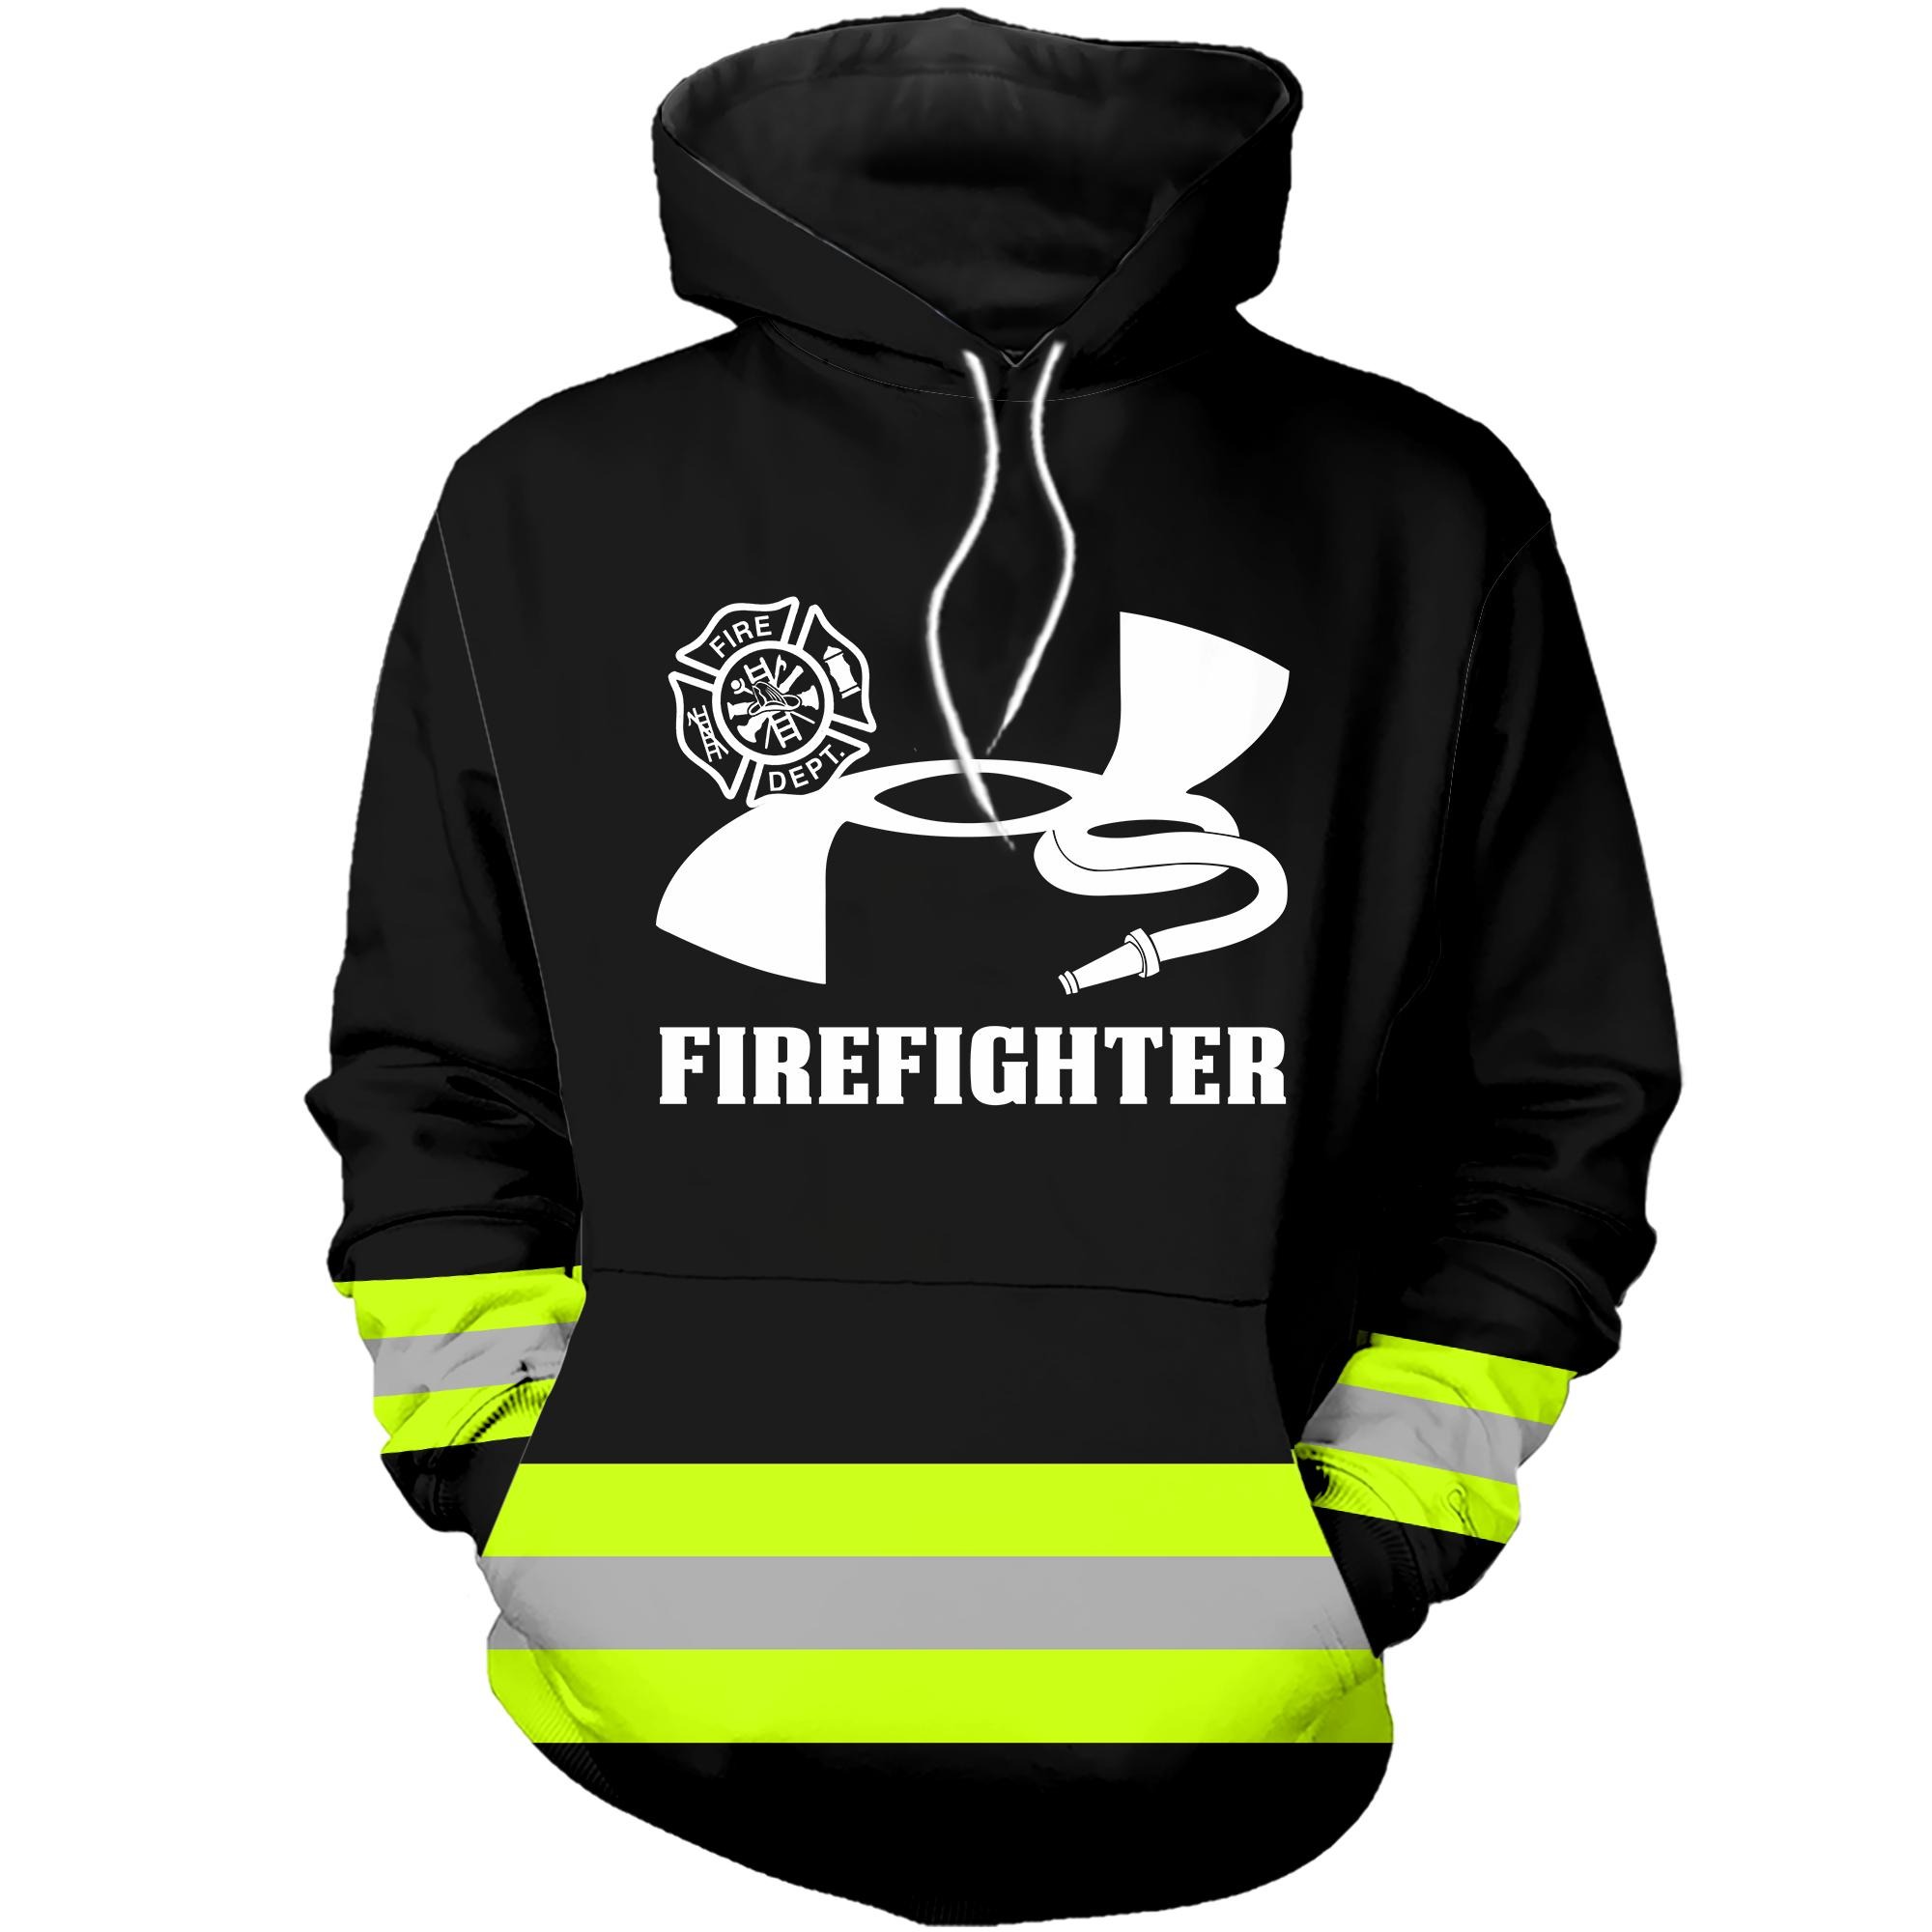 Under armour firefighter 3D green hoodie